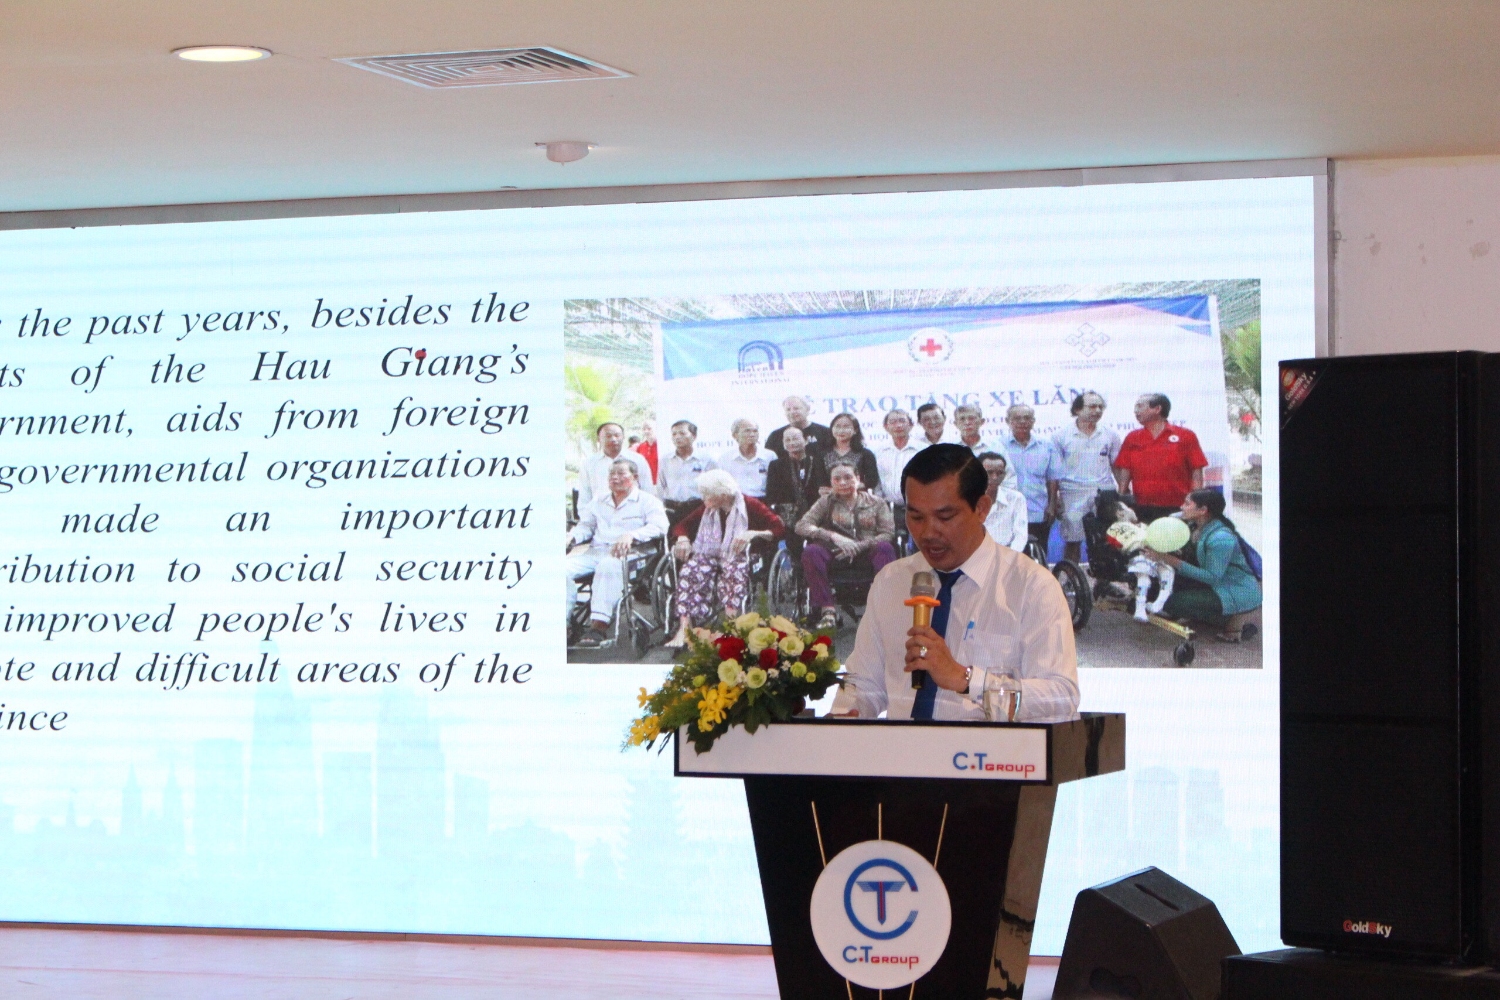 Ông Lê Minh Tuấn - Phó Chủ tịch Liên hiệp Hậu Giang Liên hiệp các tổ chức hữu nghị tỉnh Hậu Giang giới thiệu và thảo luận về chương trình xúc tiến vận động viện trợ đến các tổ chức PCPNN tại TP.Hồ Chí Minh tháng 01/2021